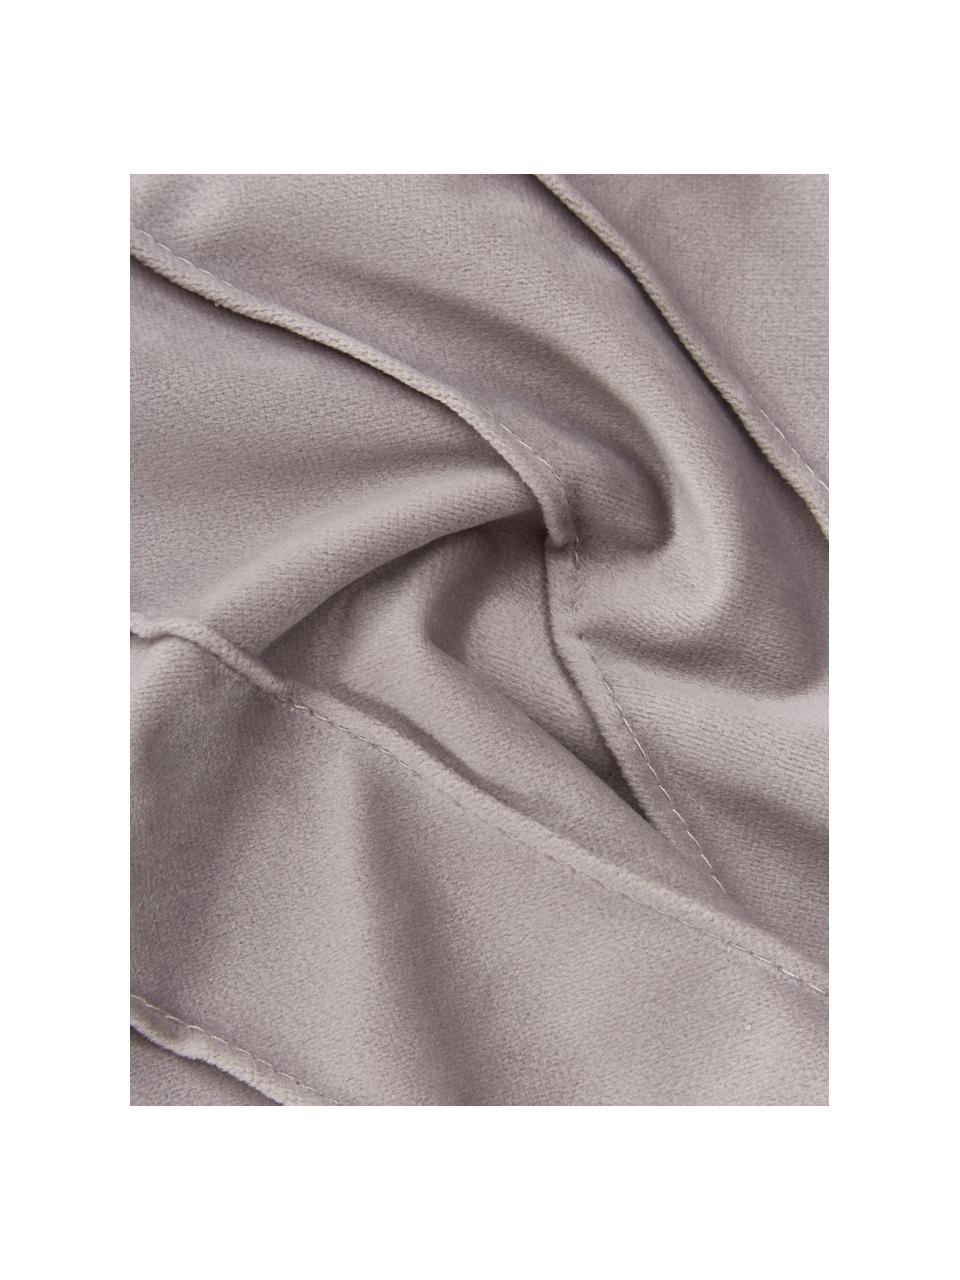 Housse de coussin en velours gris clair Leyla, Velours (100 % polyester), Gris, larg. 40 x long. 40 cm